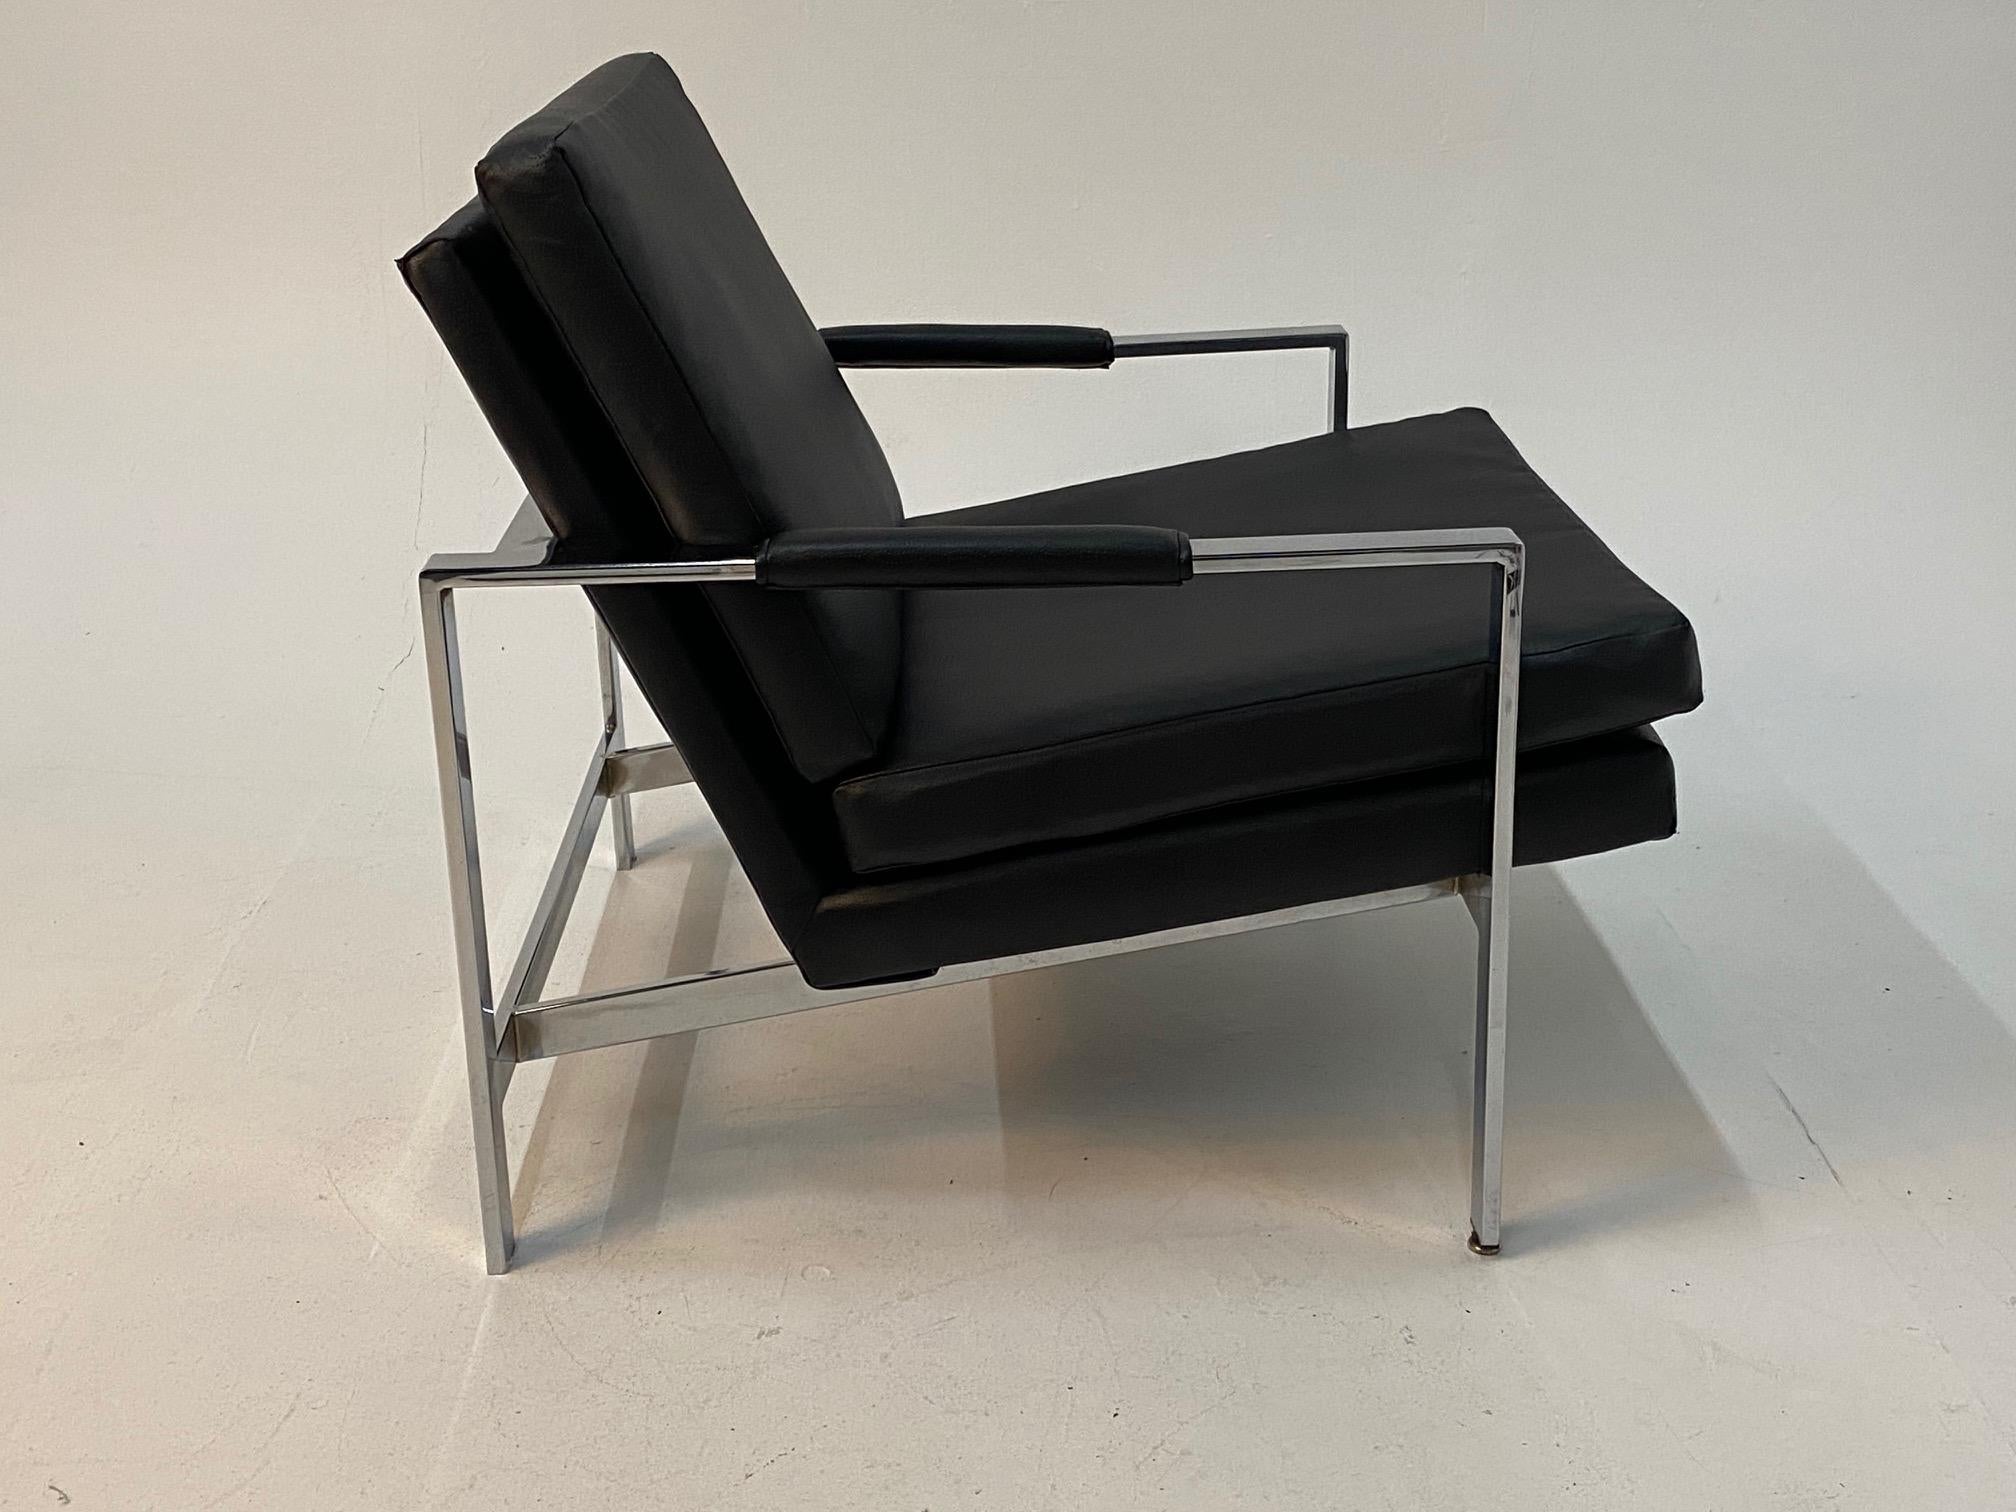 Ein raffiniertes Paar Sessel aus Chrom und schwarzem Vinyl  die die Klasse der Moderne der Jahrhundertmitte ausstrahlen.  Keine Markierungen, sieht aber sicher wie Milo Baughman aus.   Das Vinyl weist einige Risse auf.
Maße: Armhöhe 19.